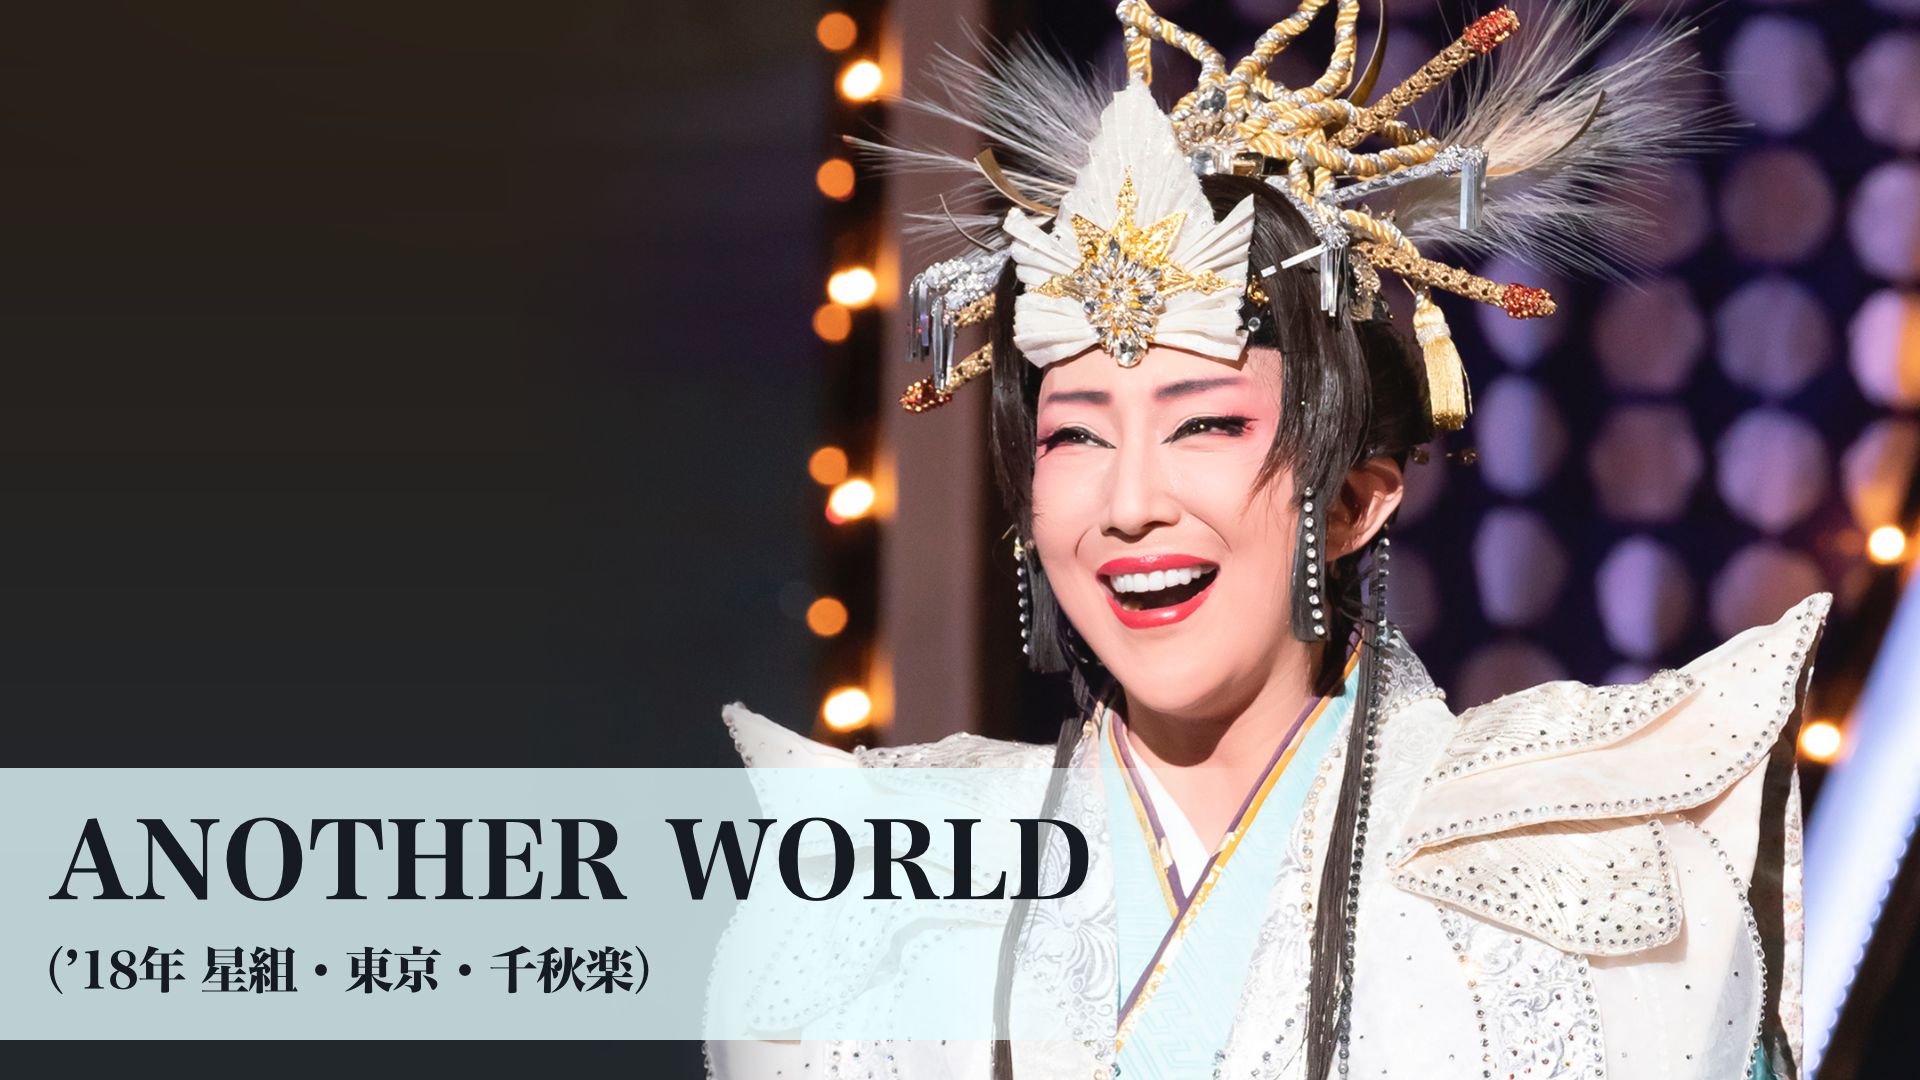 宝塚歌劇 ANOTHER WORLD(’18年星組・東京・千秋楽)